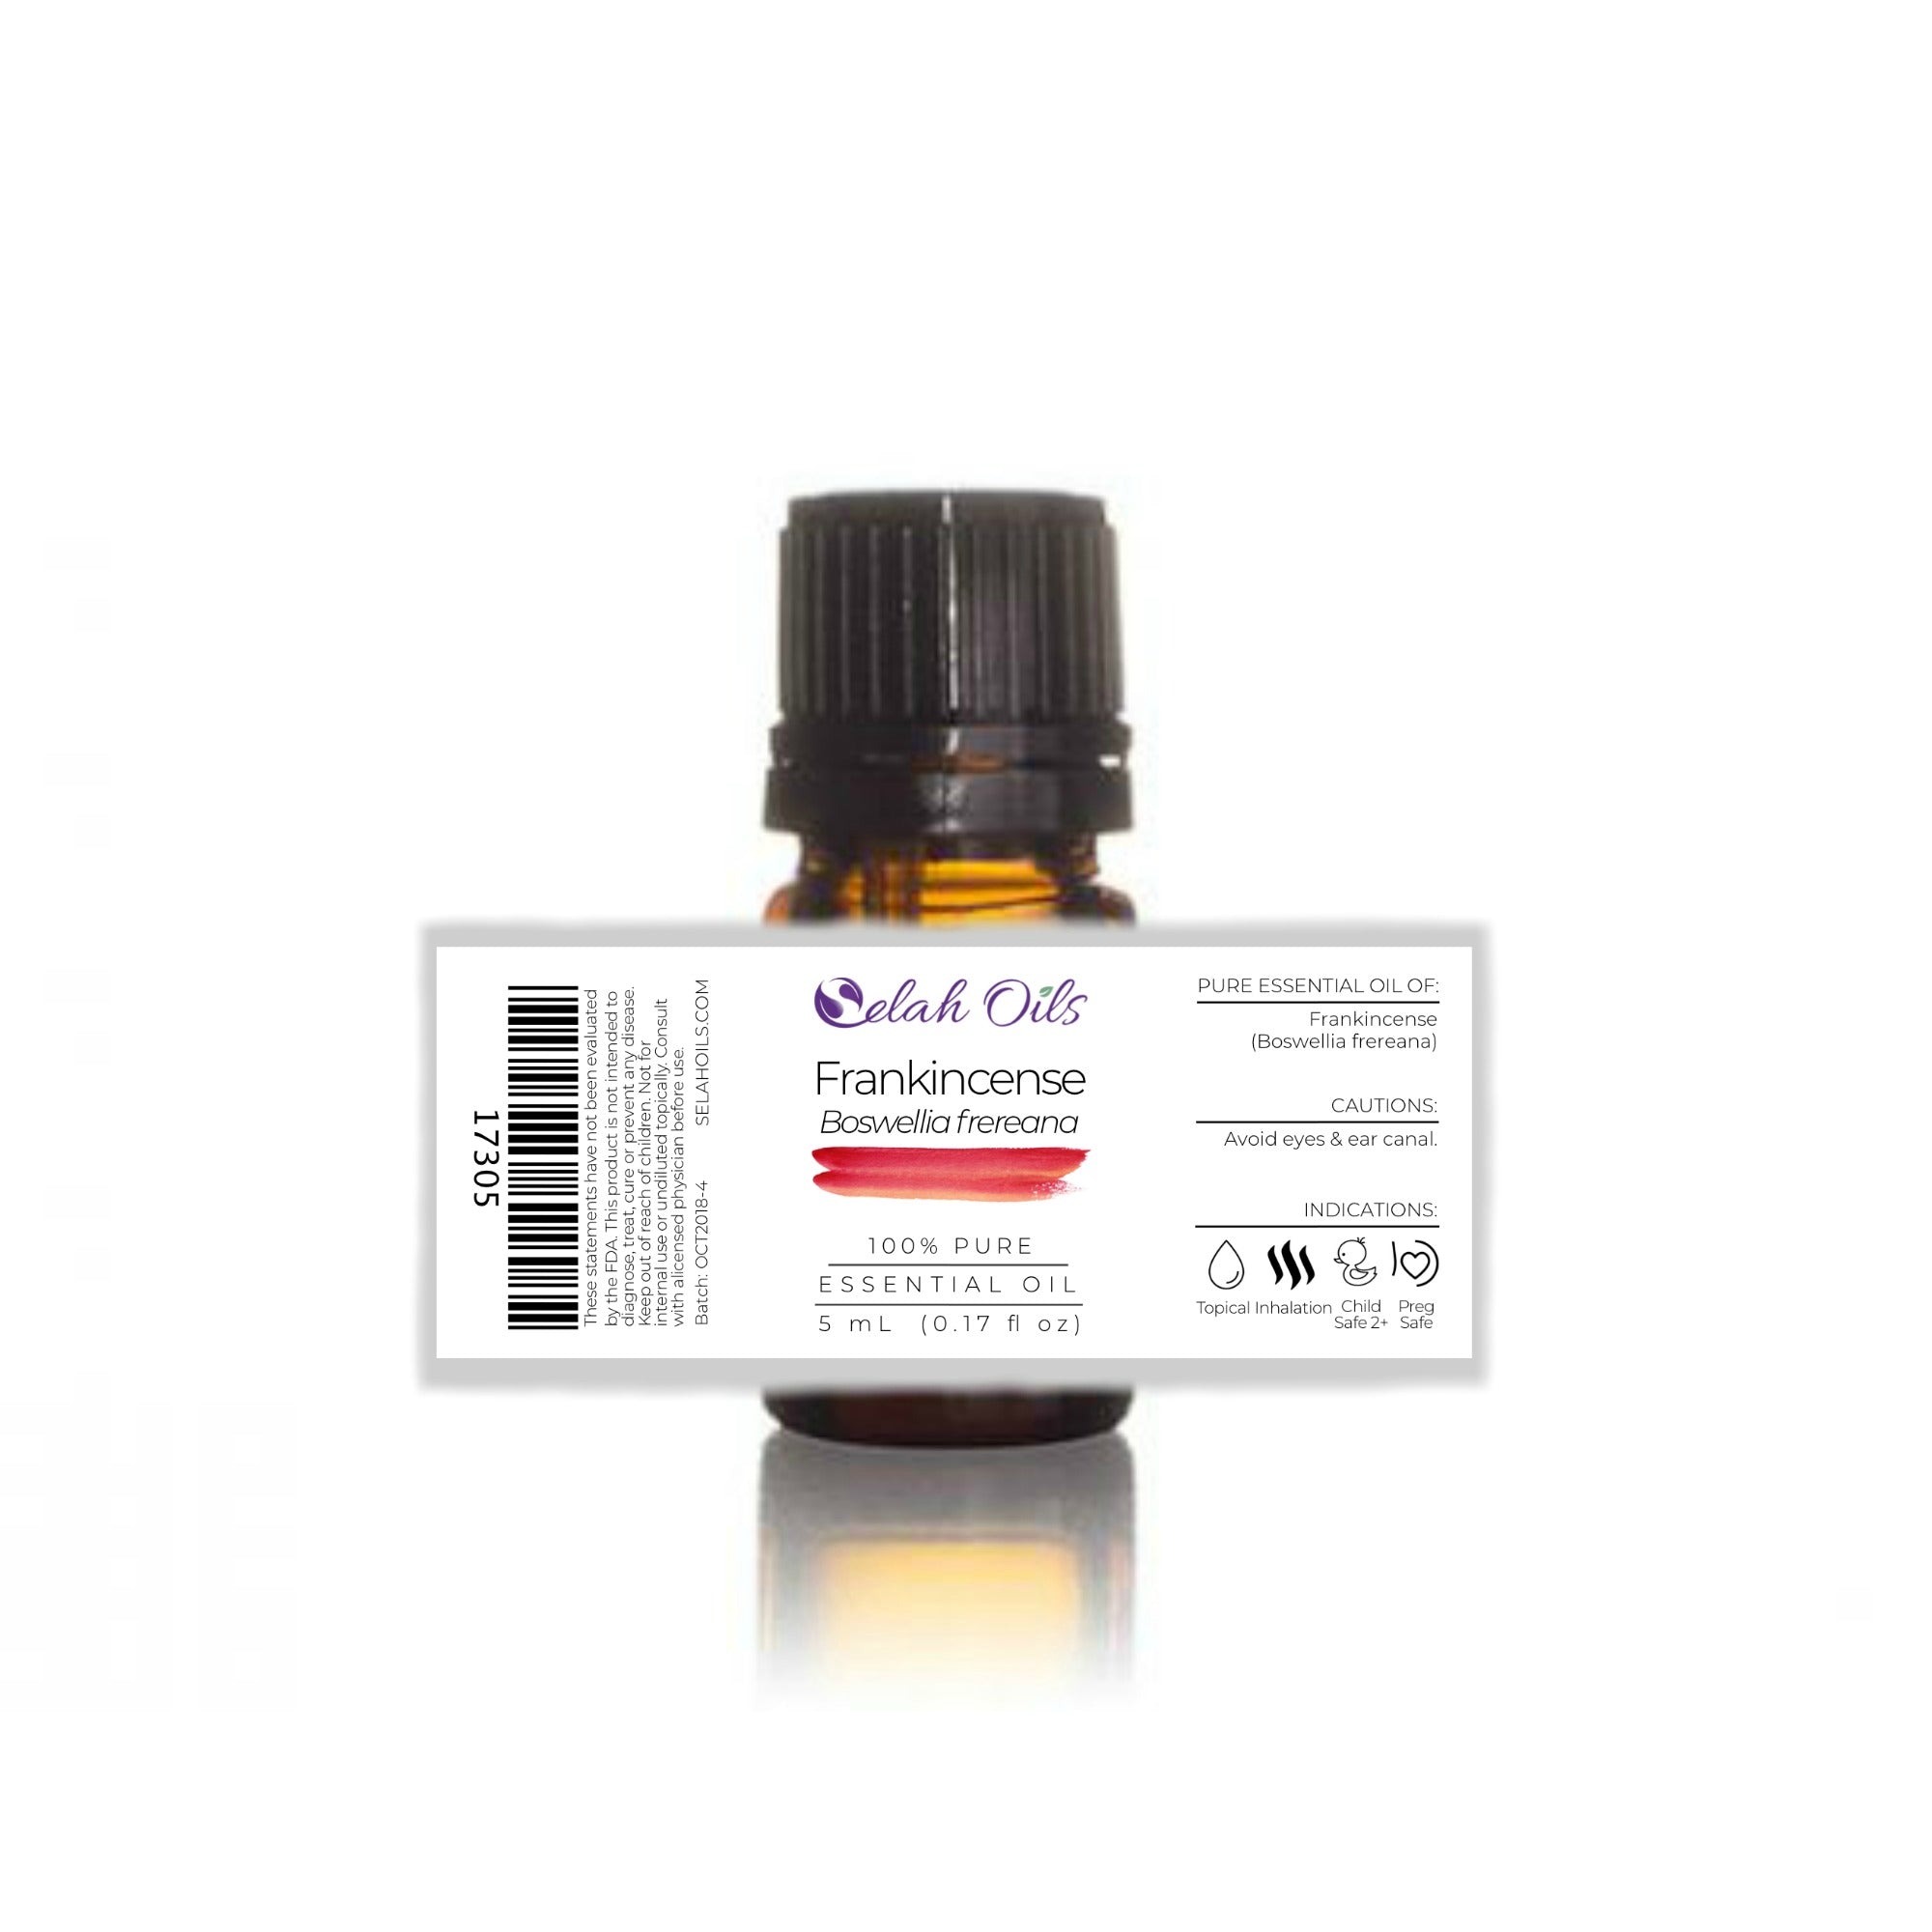 Frankincense (Boswellia frereana) Essential Oil*